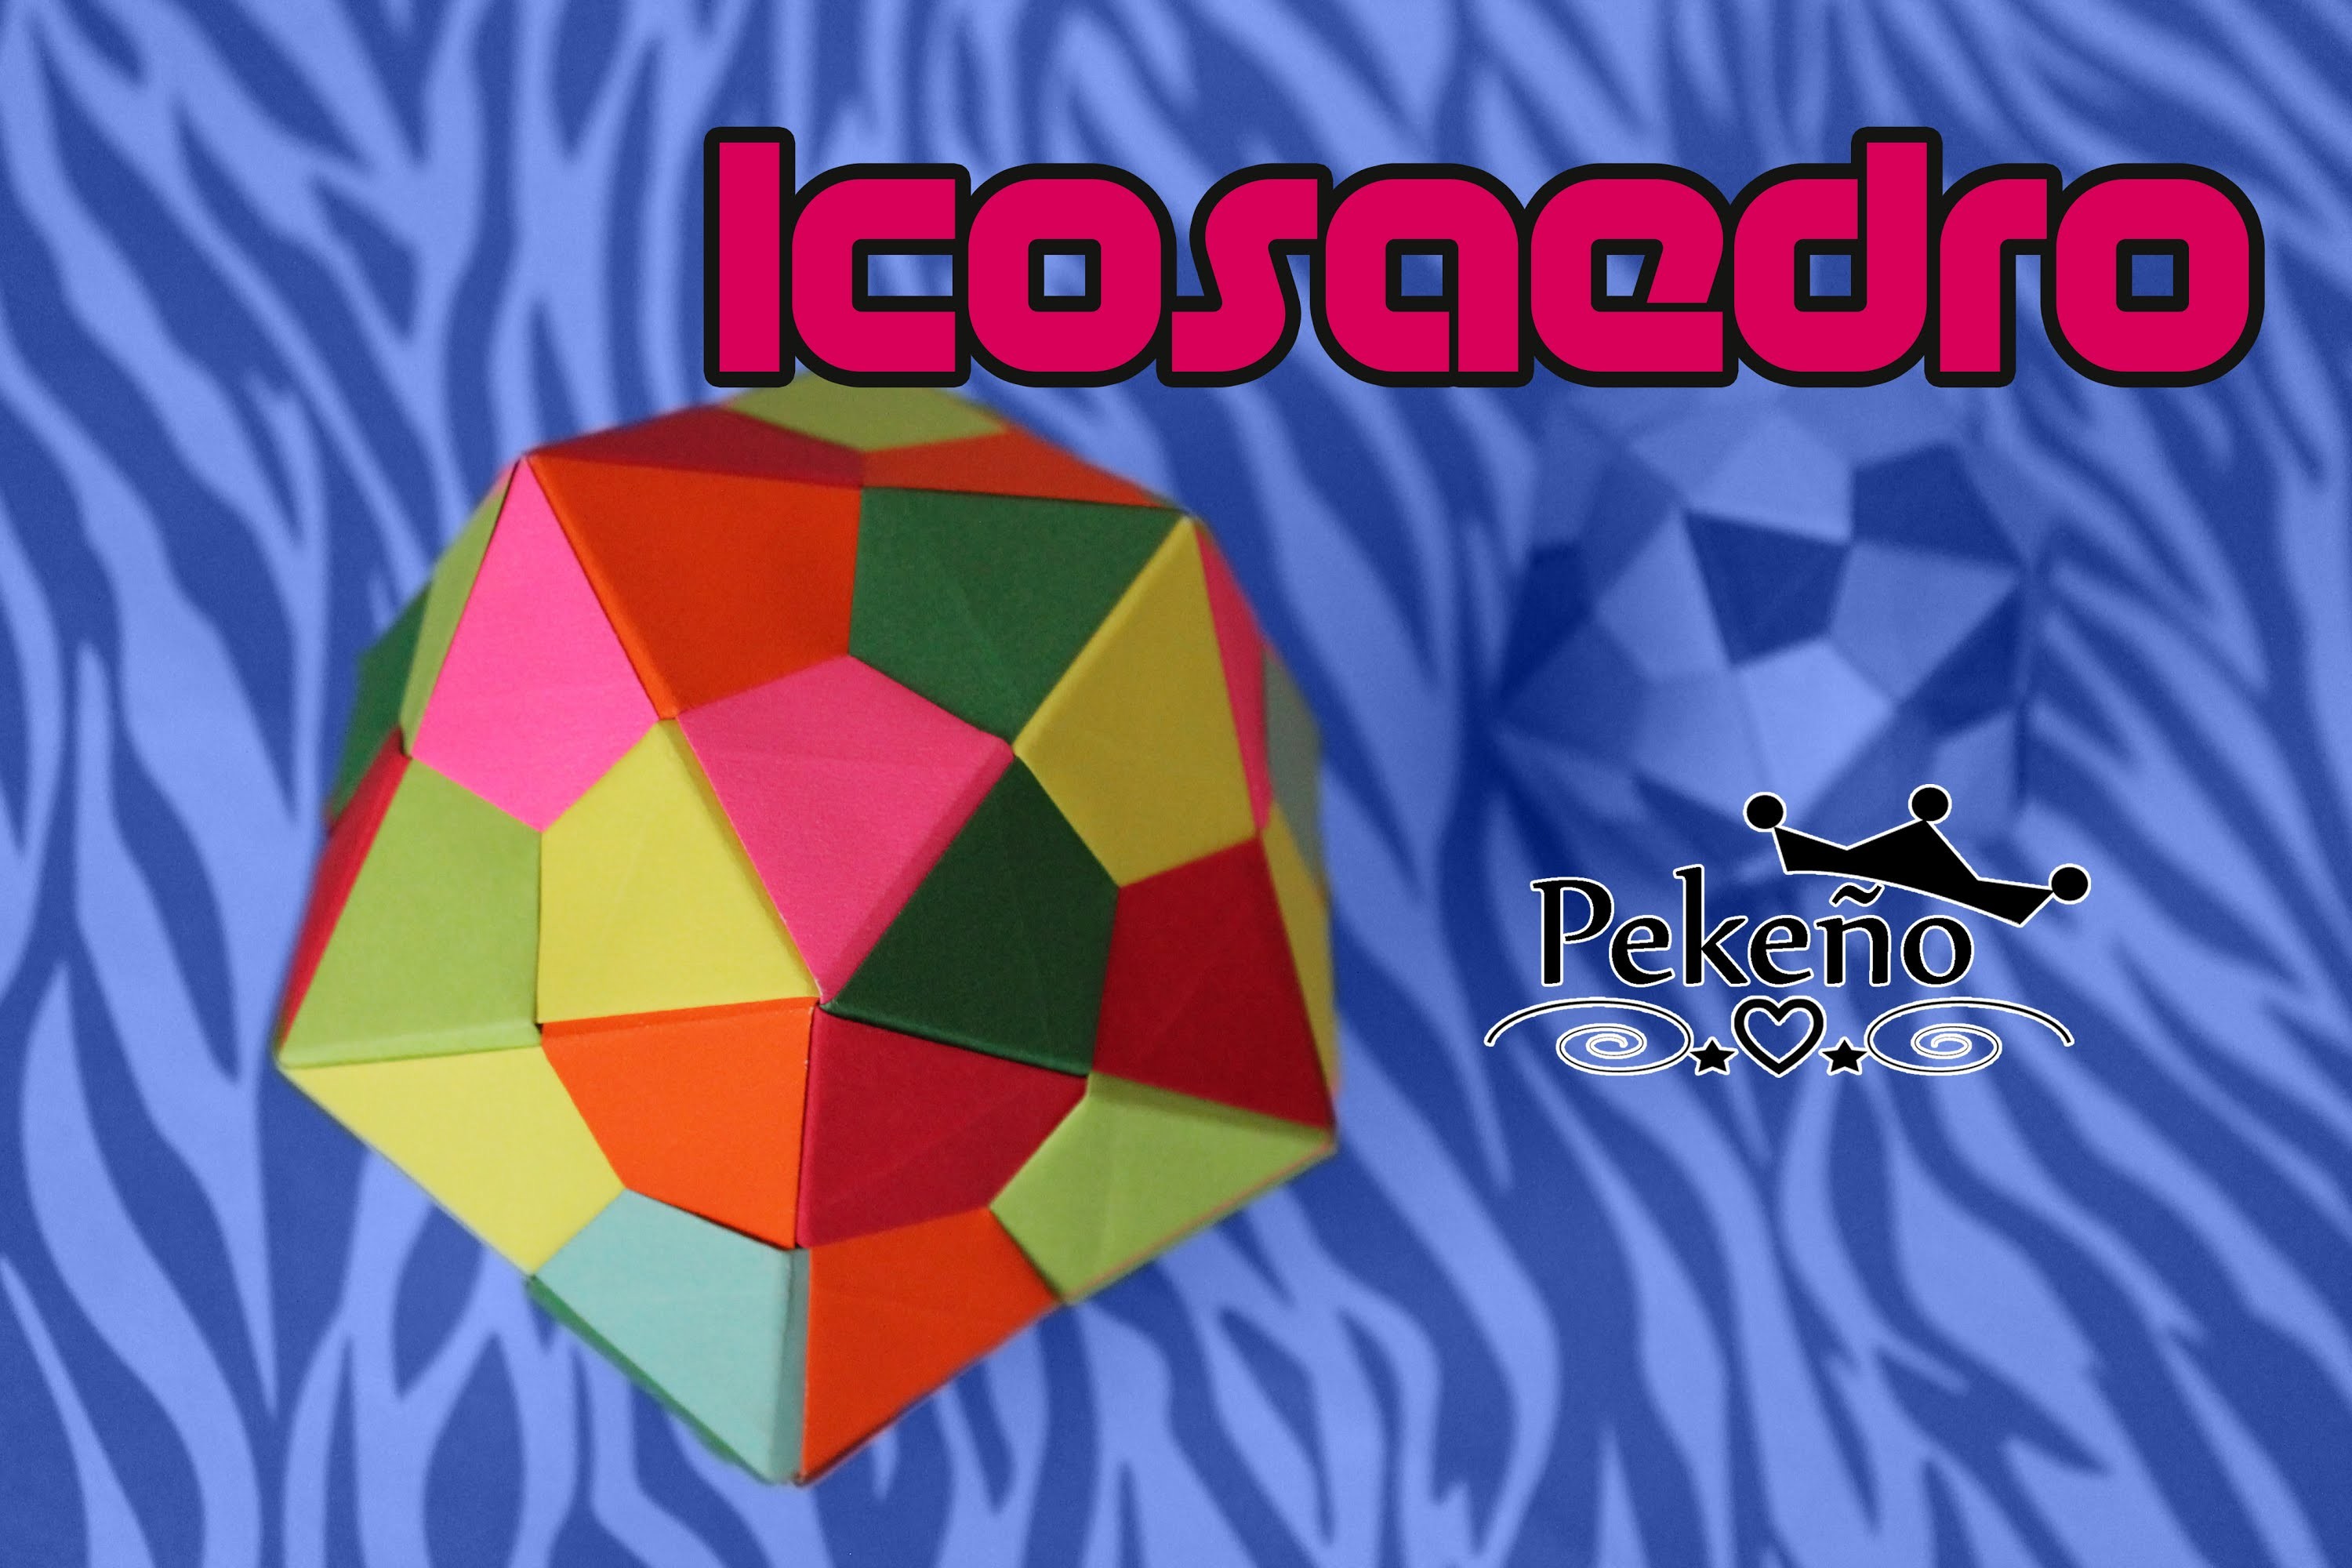 Icosaedro | Pekeño ♥